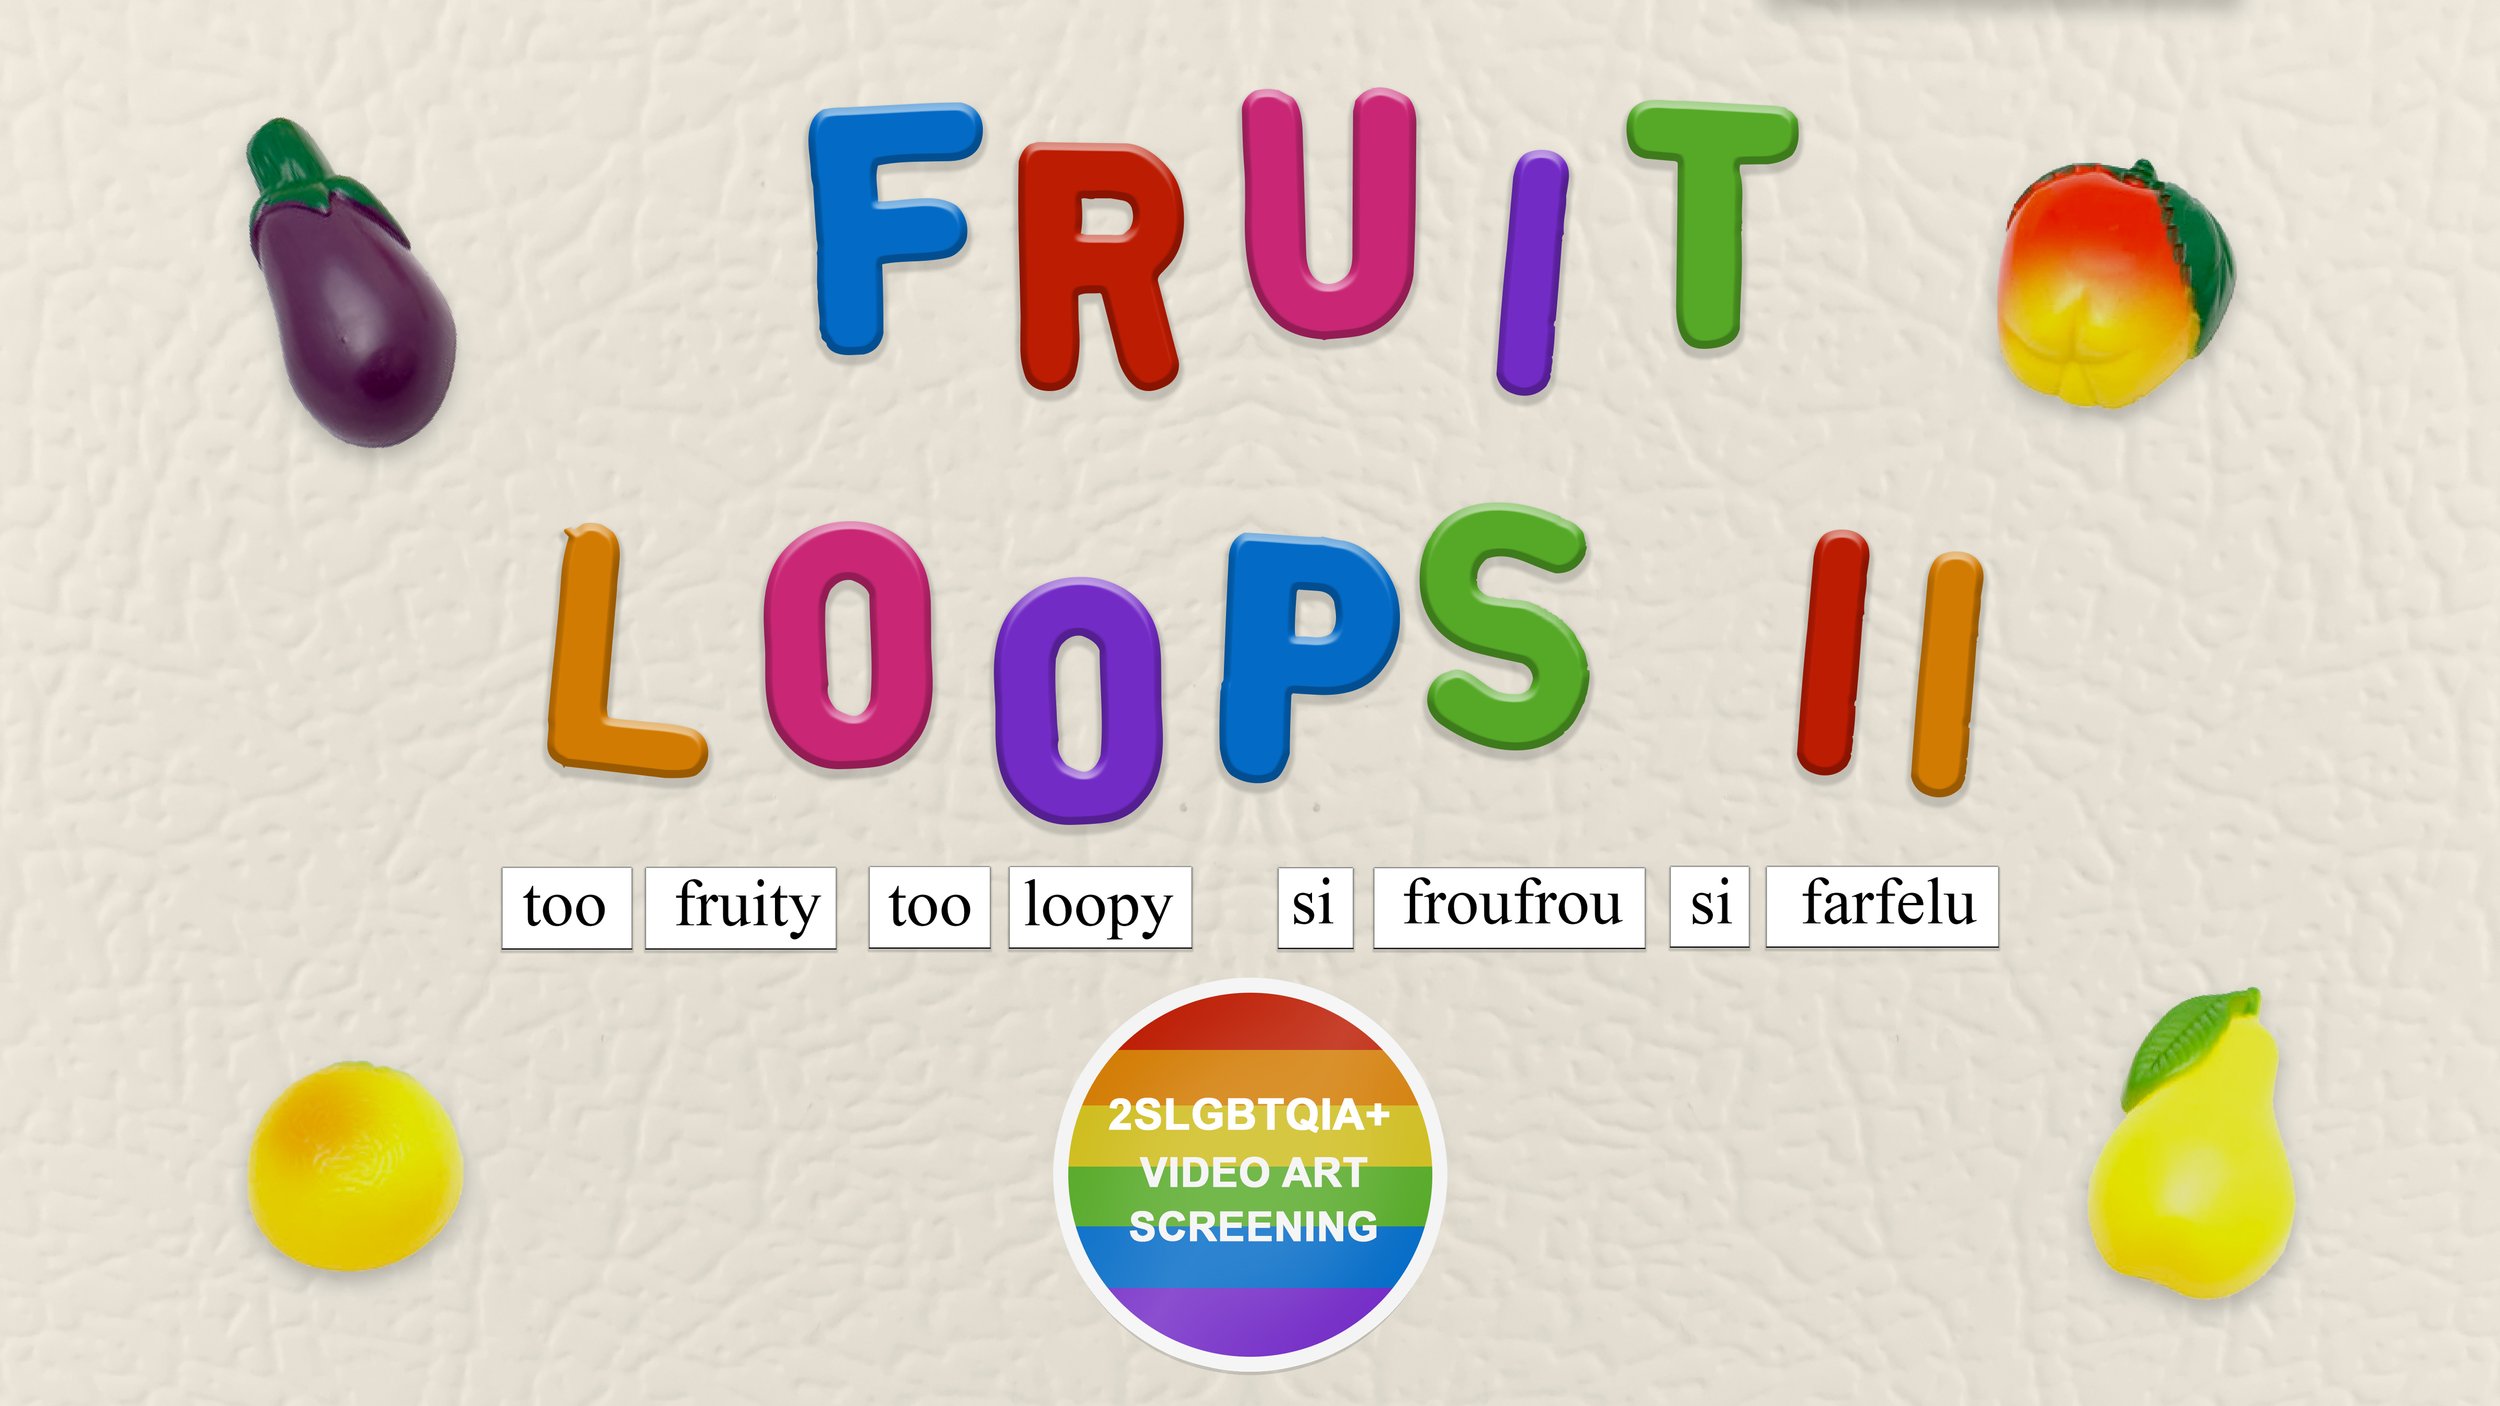 Fruit Loops II